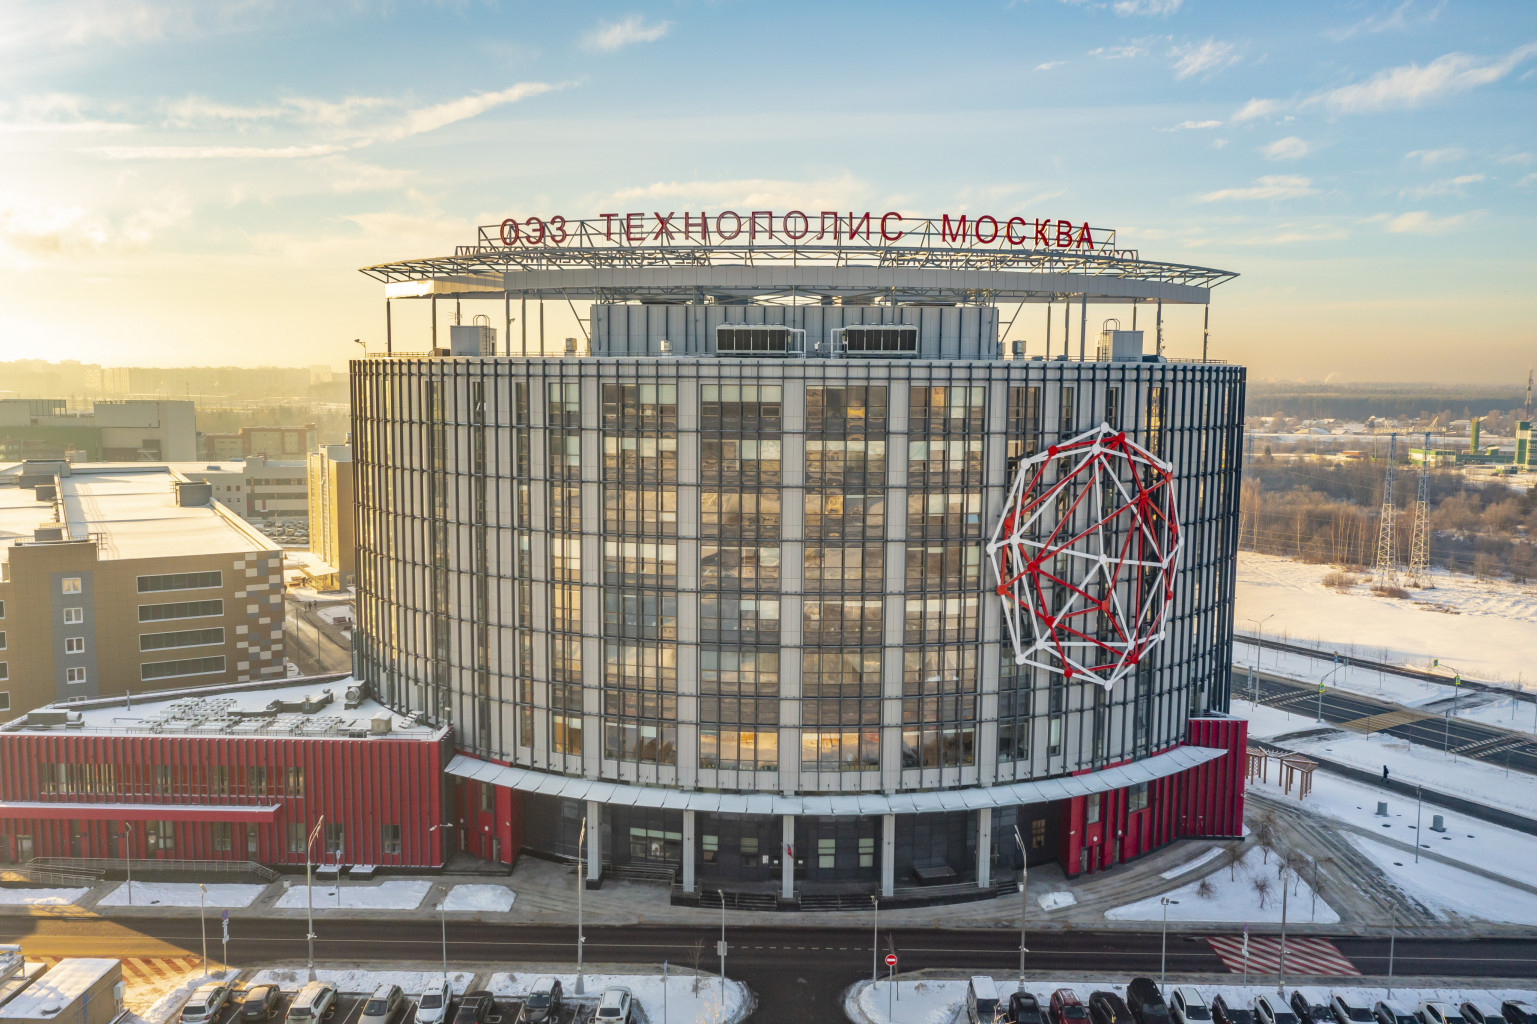  Сергей Собянин: ОЭЗ «Технополис Москва» становится главной производственной площадкой города